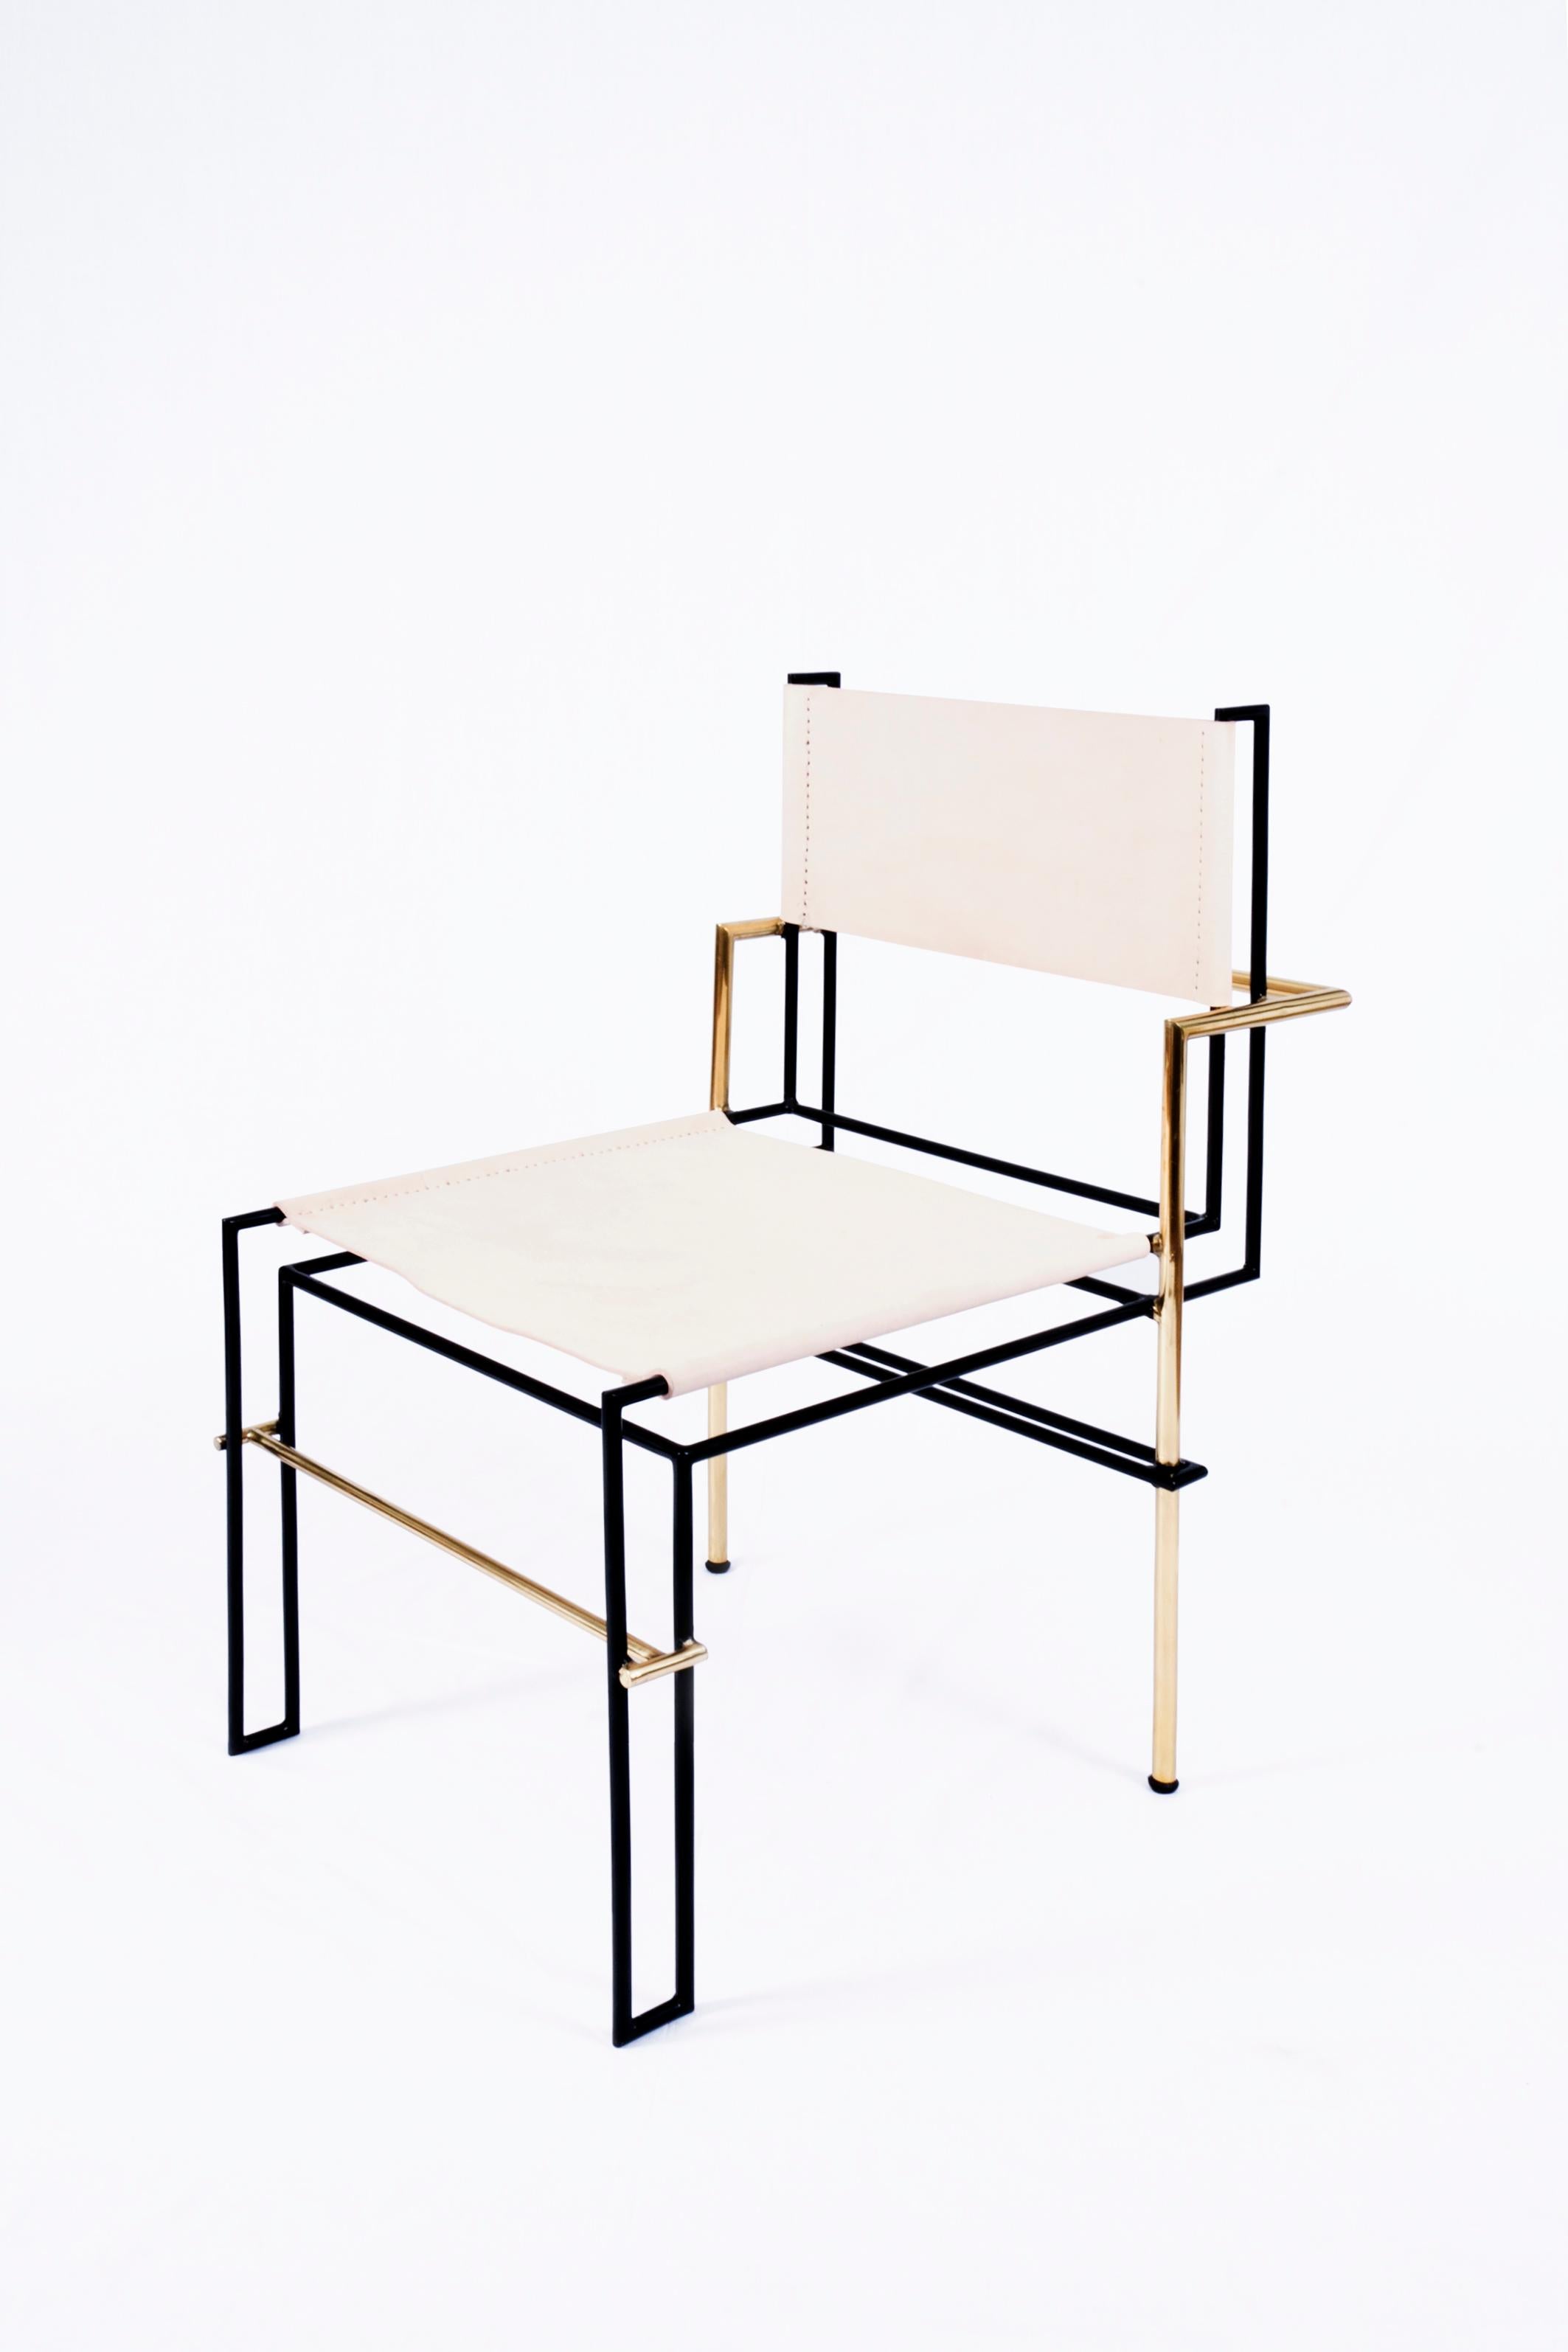 Casbah messing stuhl schwarz von Nomade Atelier
Abmessungen: T94 x B 75 x H107 cm
MATERIAL: Messing, Leder.
Erhältlich in schwarzem oder weißem Leder. Für andere endet,

Der Casbah-Stuhl, inspiriert von den Fotogrammen von Laszlo Moholy-Nagy, steht